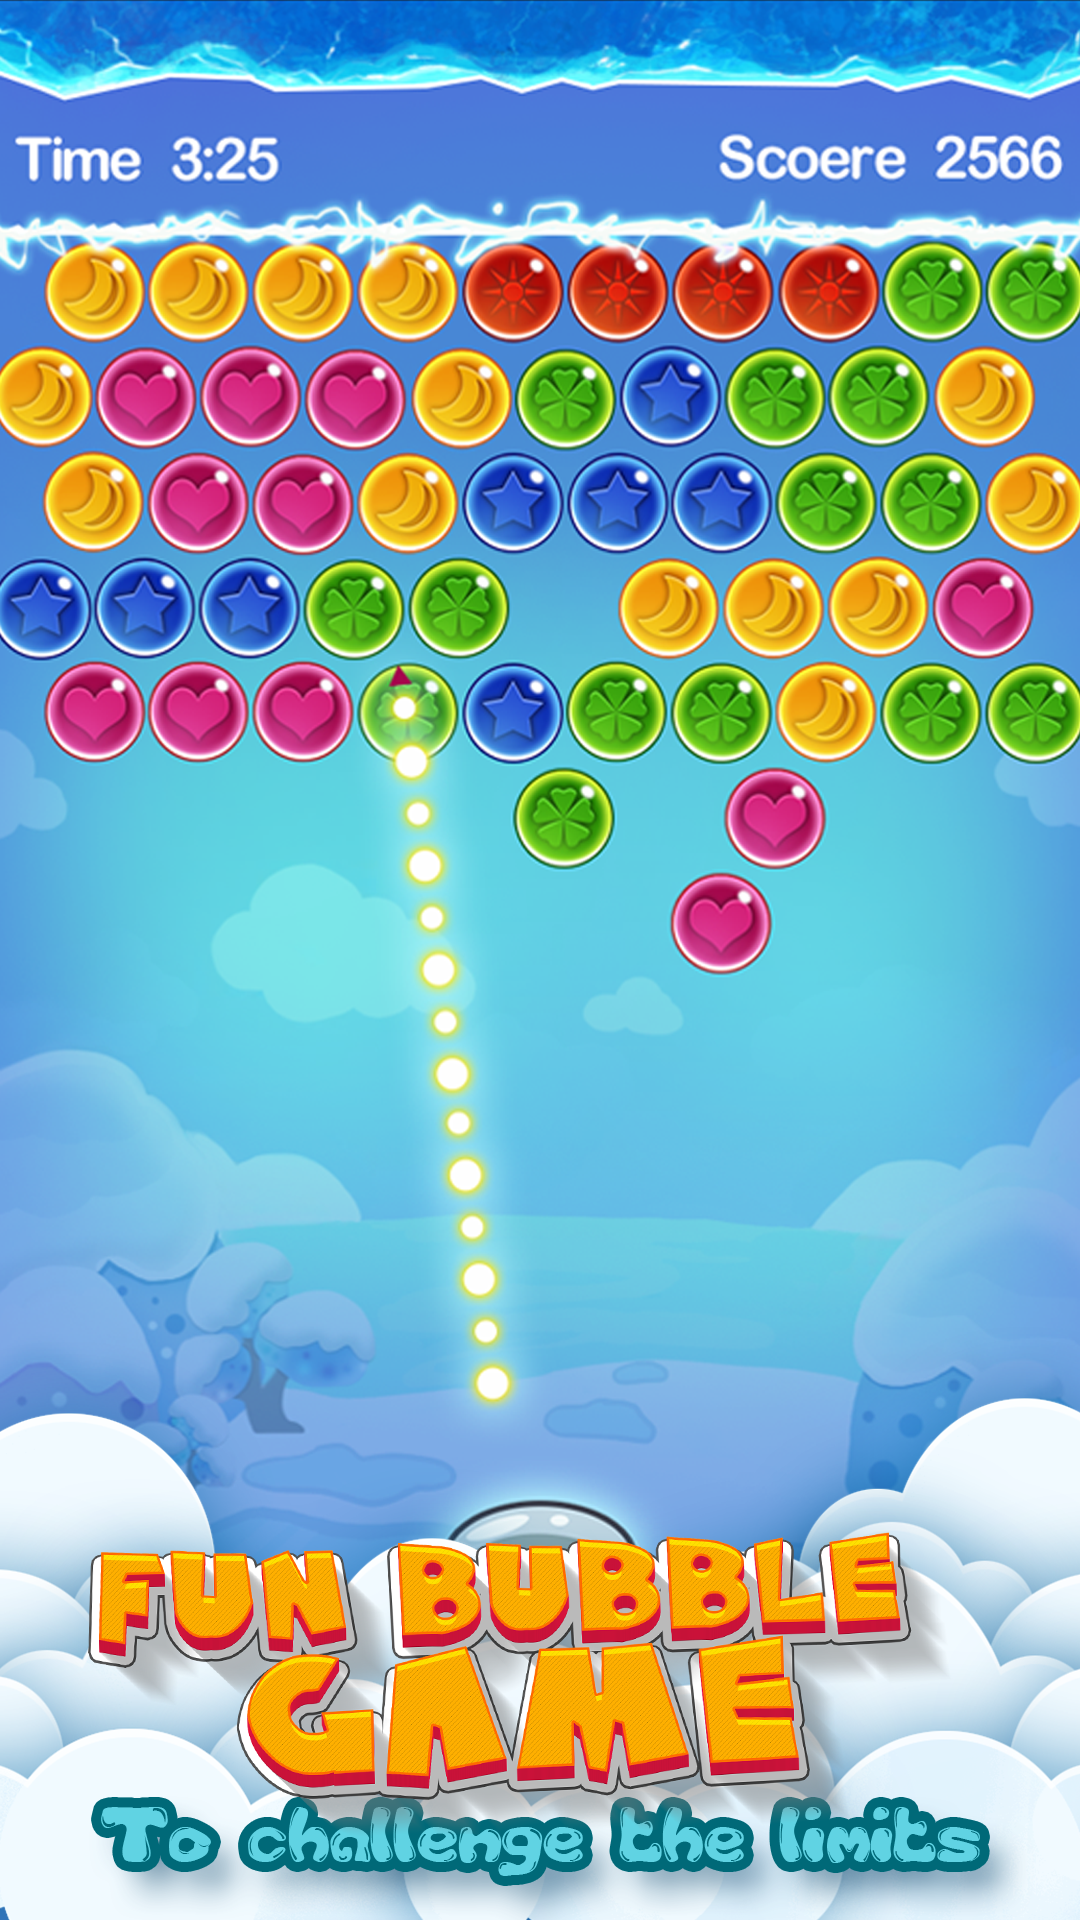 Screenshot 1 of Bubble Shooter - бесплатная популярная казуальная игра-головоломка 4.0